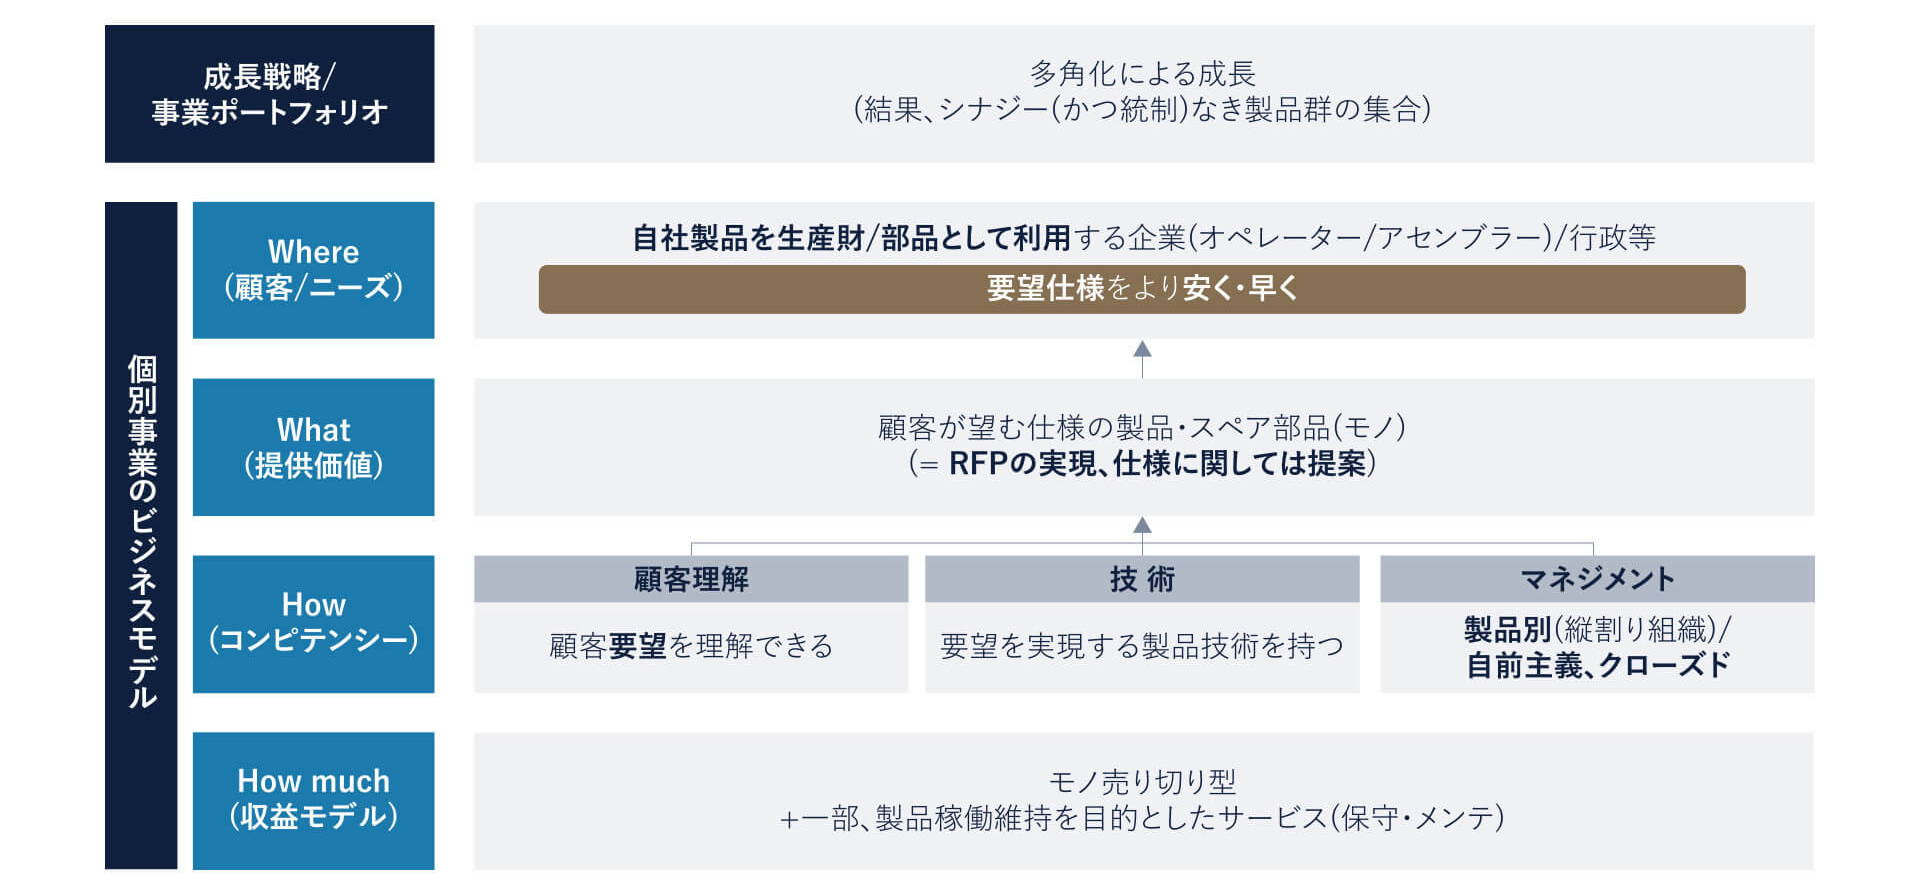 図2: 日本製造業のビジネスモデル(As-Is)